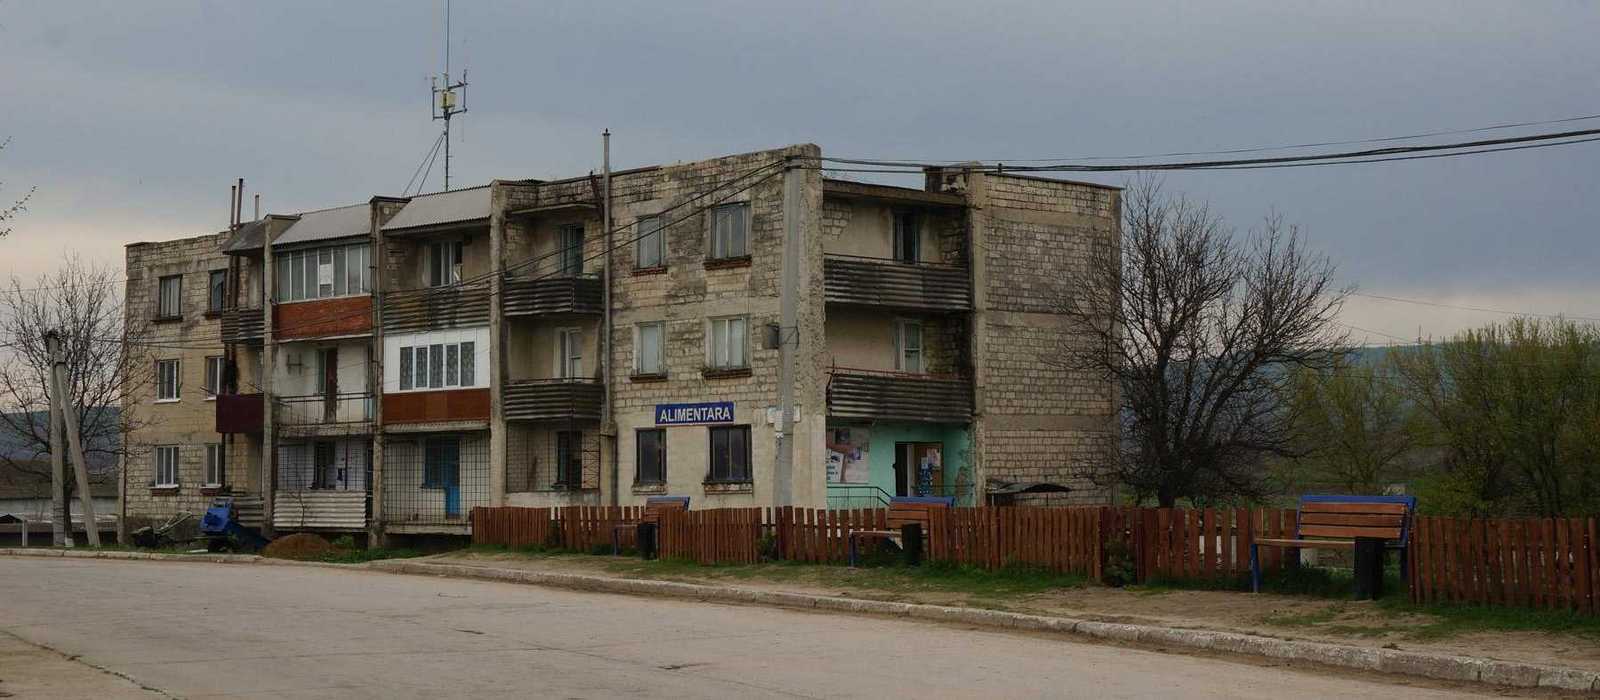 heruntergekommene Häuserfronten in Chisinau